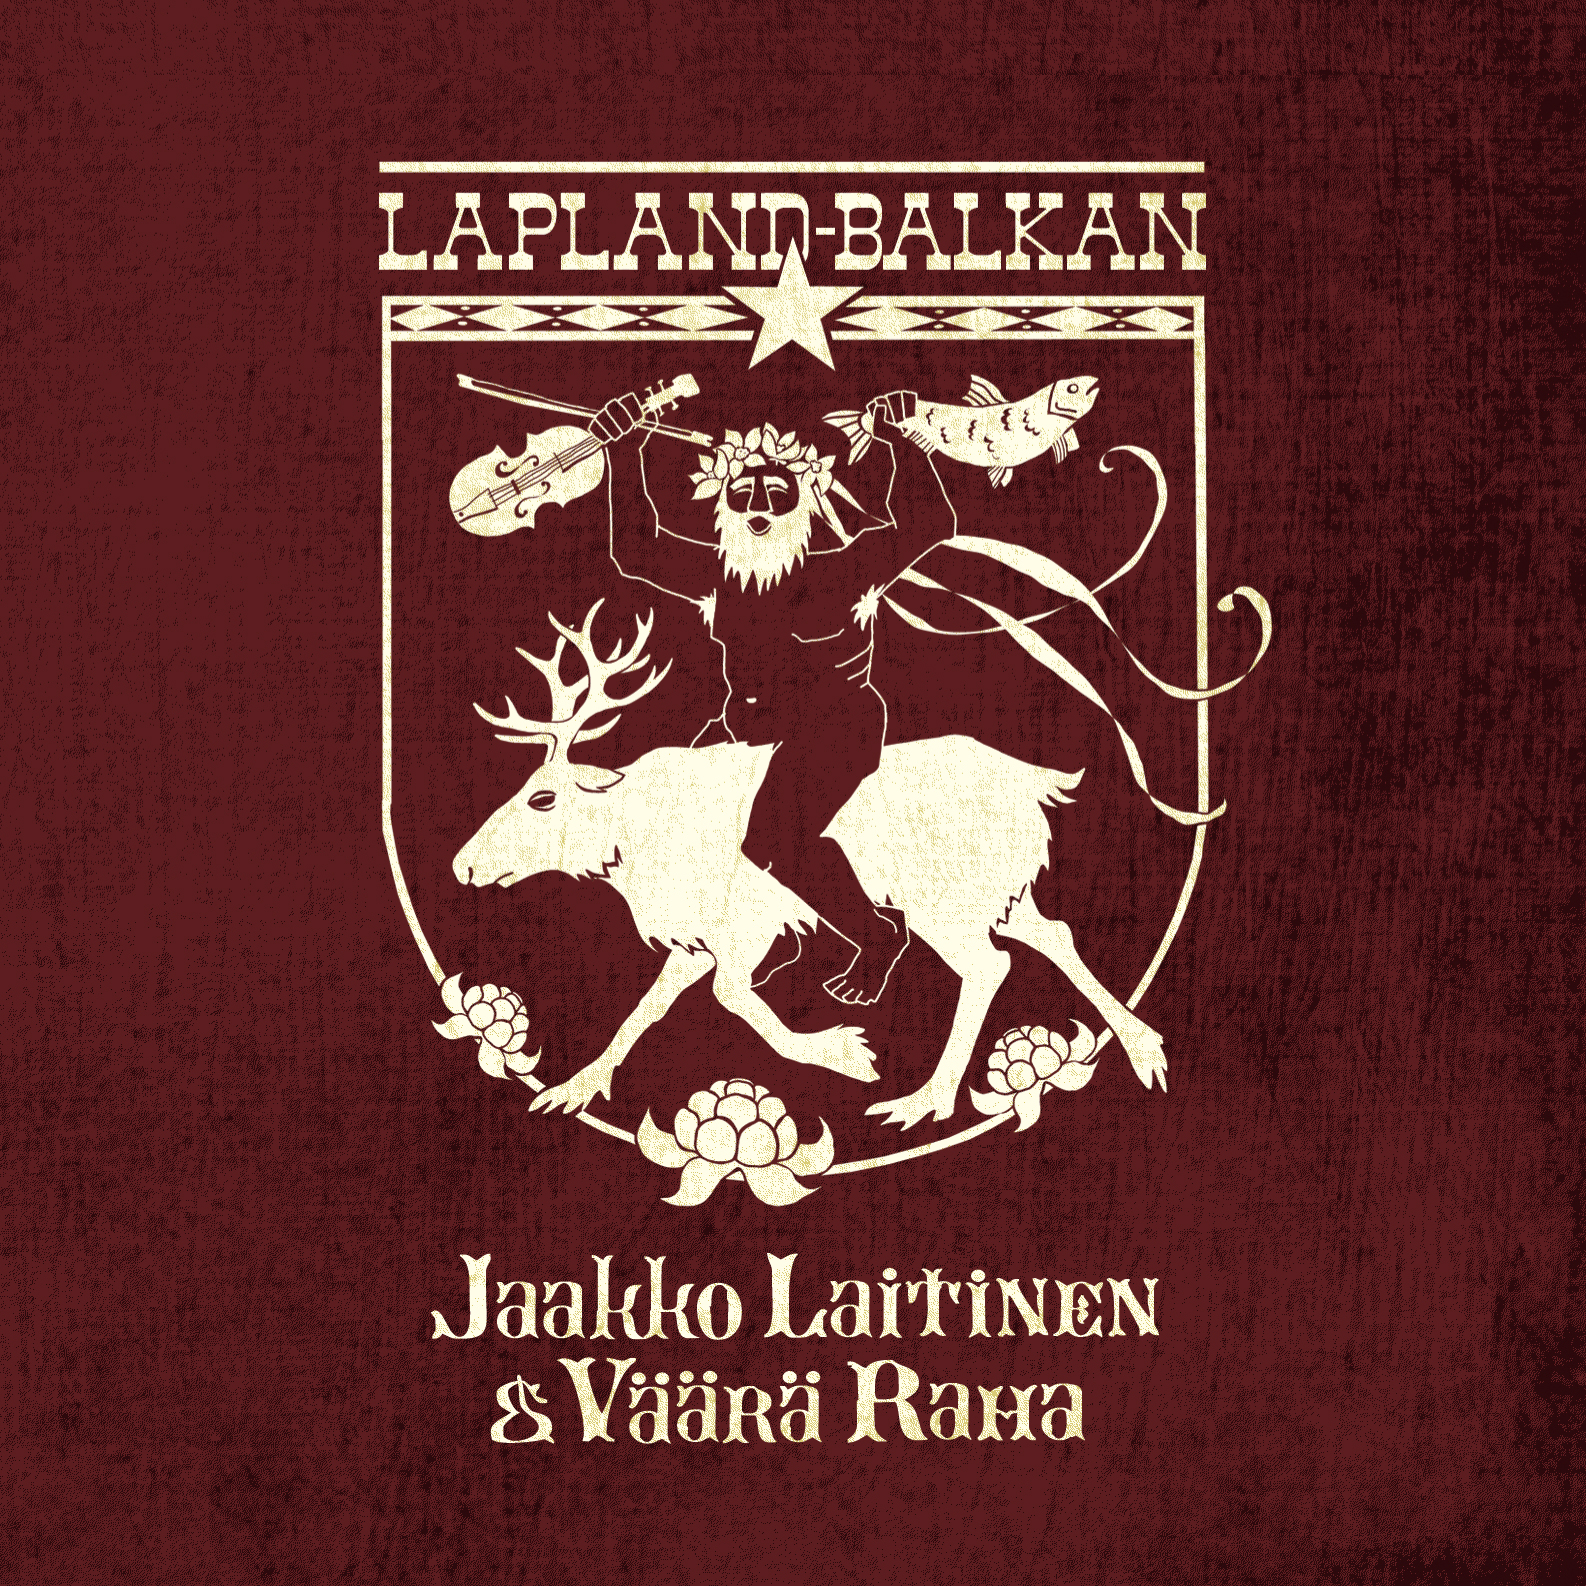 Jaakko Laitinen & V  r  Raha - Lapland-Balkan - CD